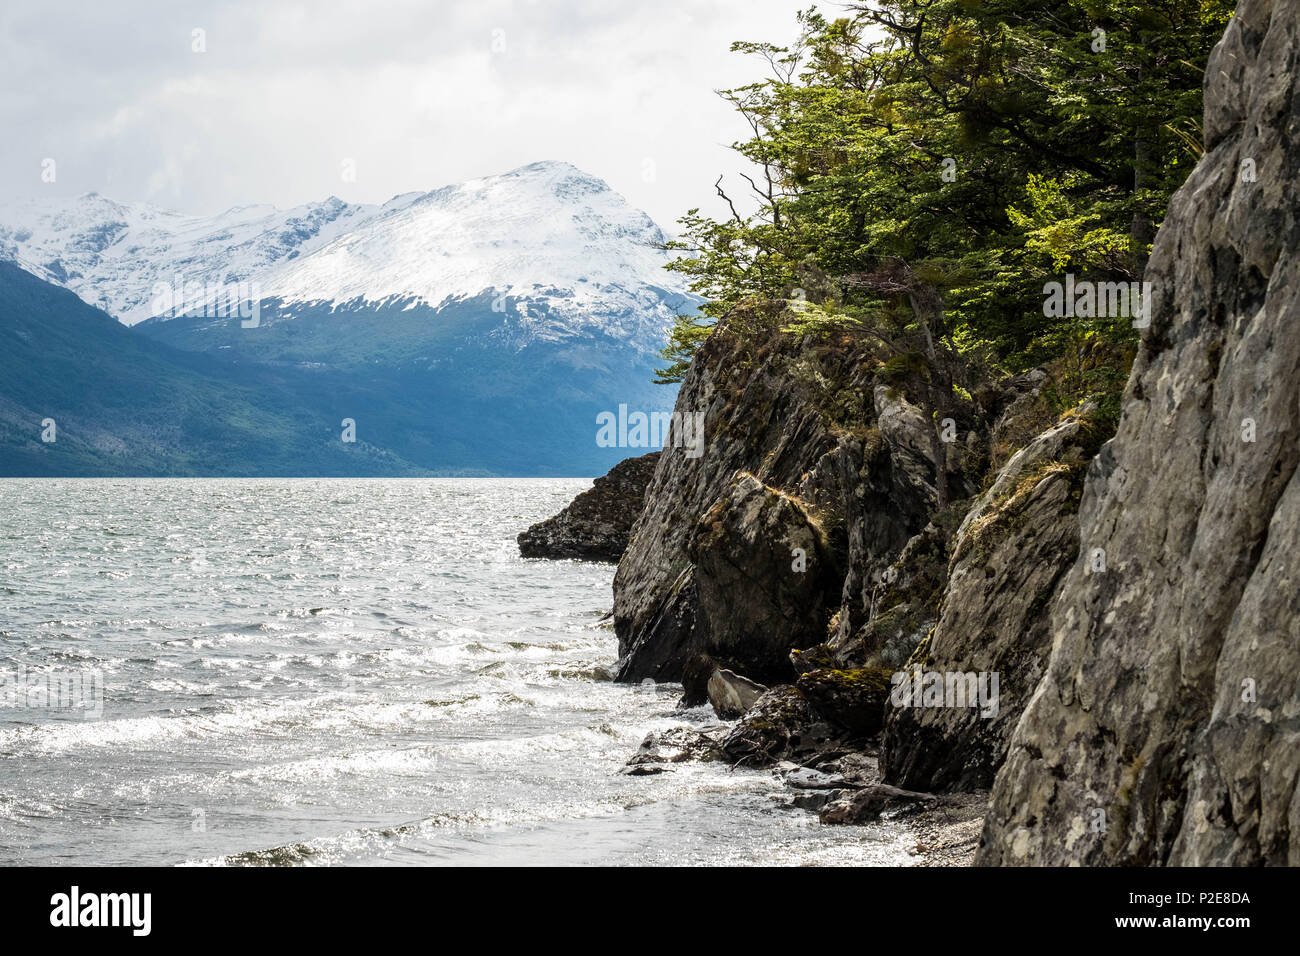 Una scogliera confina con il lago Acigami nel parco nazionale della Tierra del Fuego, le montagne si trovano dall'altra parte. Questo lago collega l'Argentina e il Cile. Foto Stock